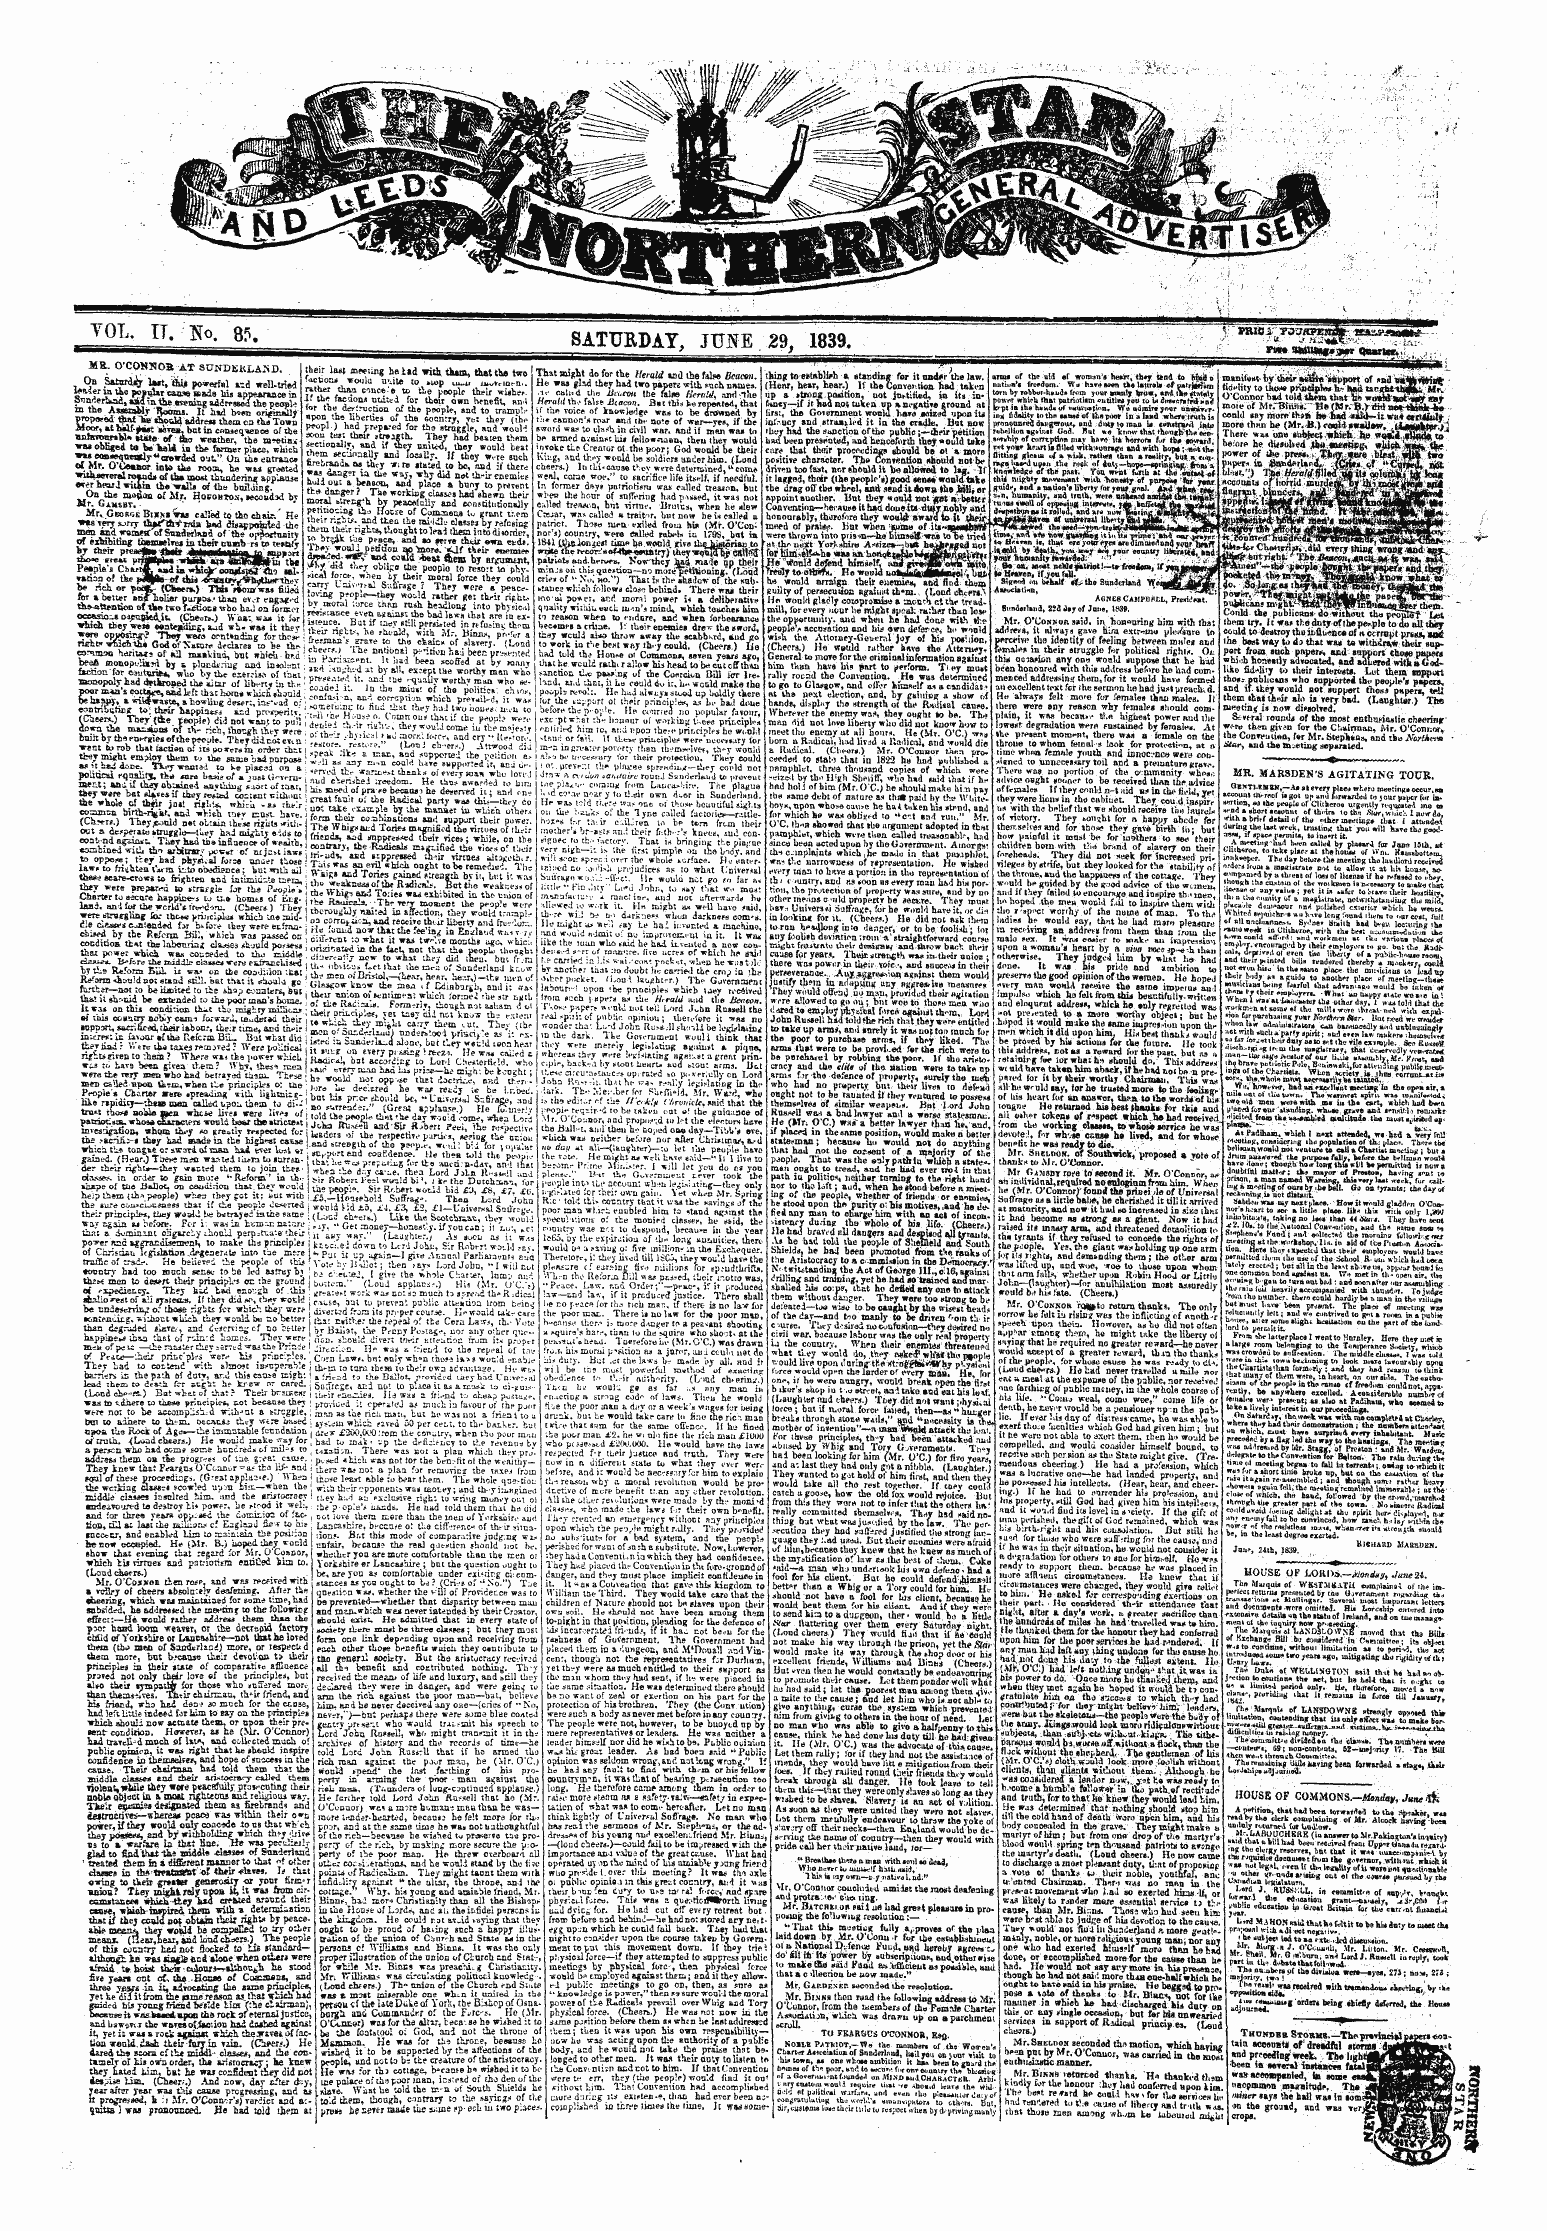 Northern Star (1837-1852): jS F Y, 1st edition - Vd M«Av»«« Jn.K- U Tuhsoa At Sundkkt.Ann Mr. O'Cokkob At Sundeklam).